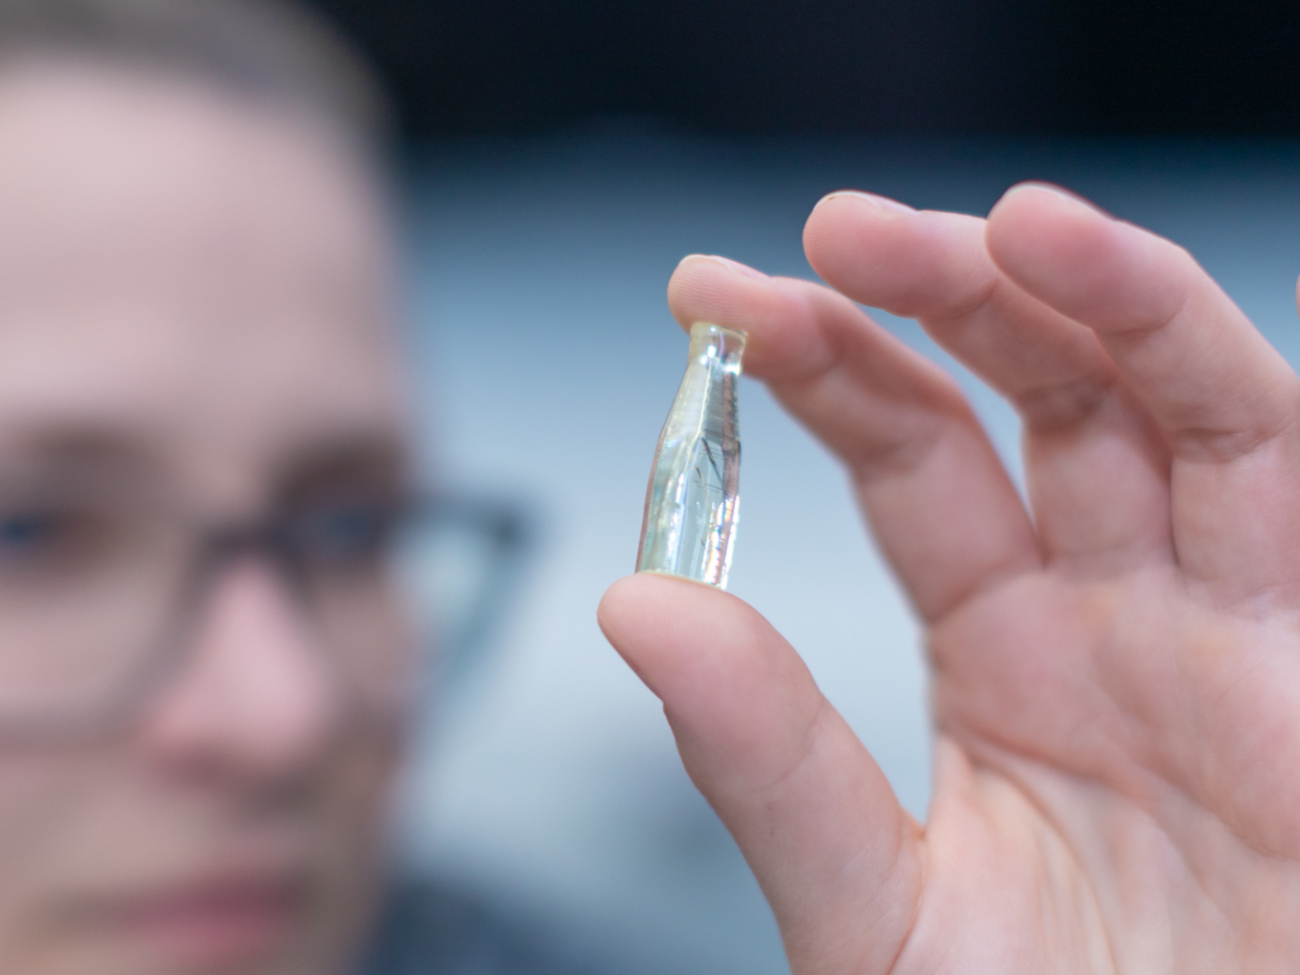 Eine hauchdünne Glasspitze für die Forschung an einem Kristall